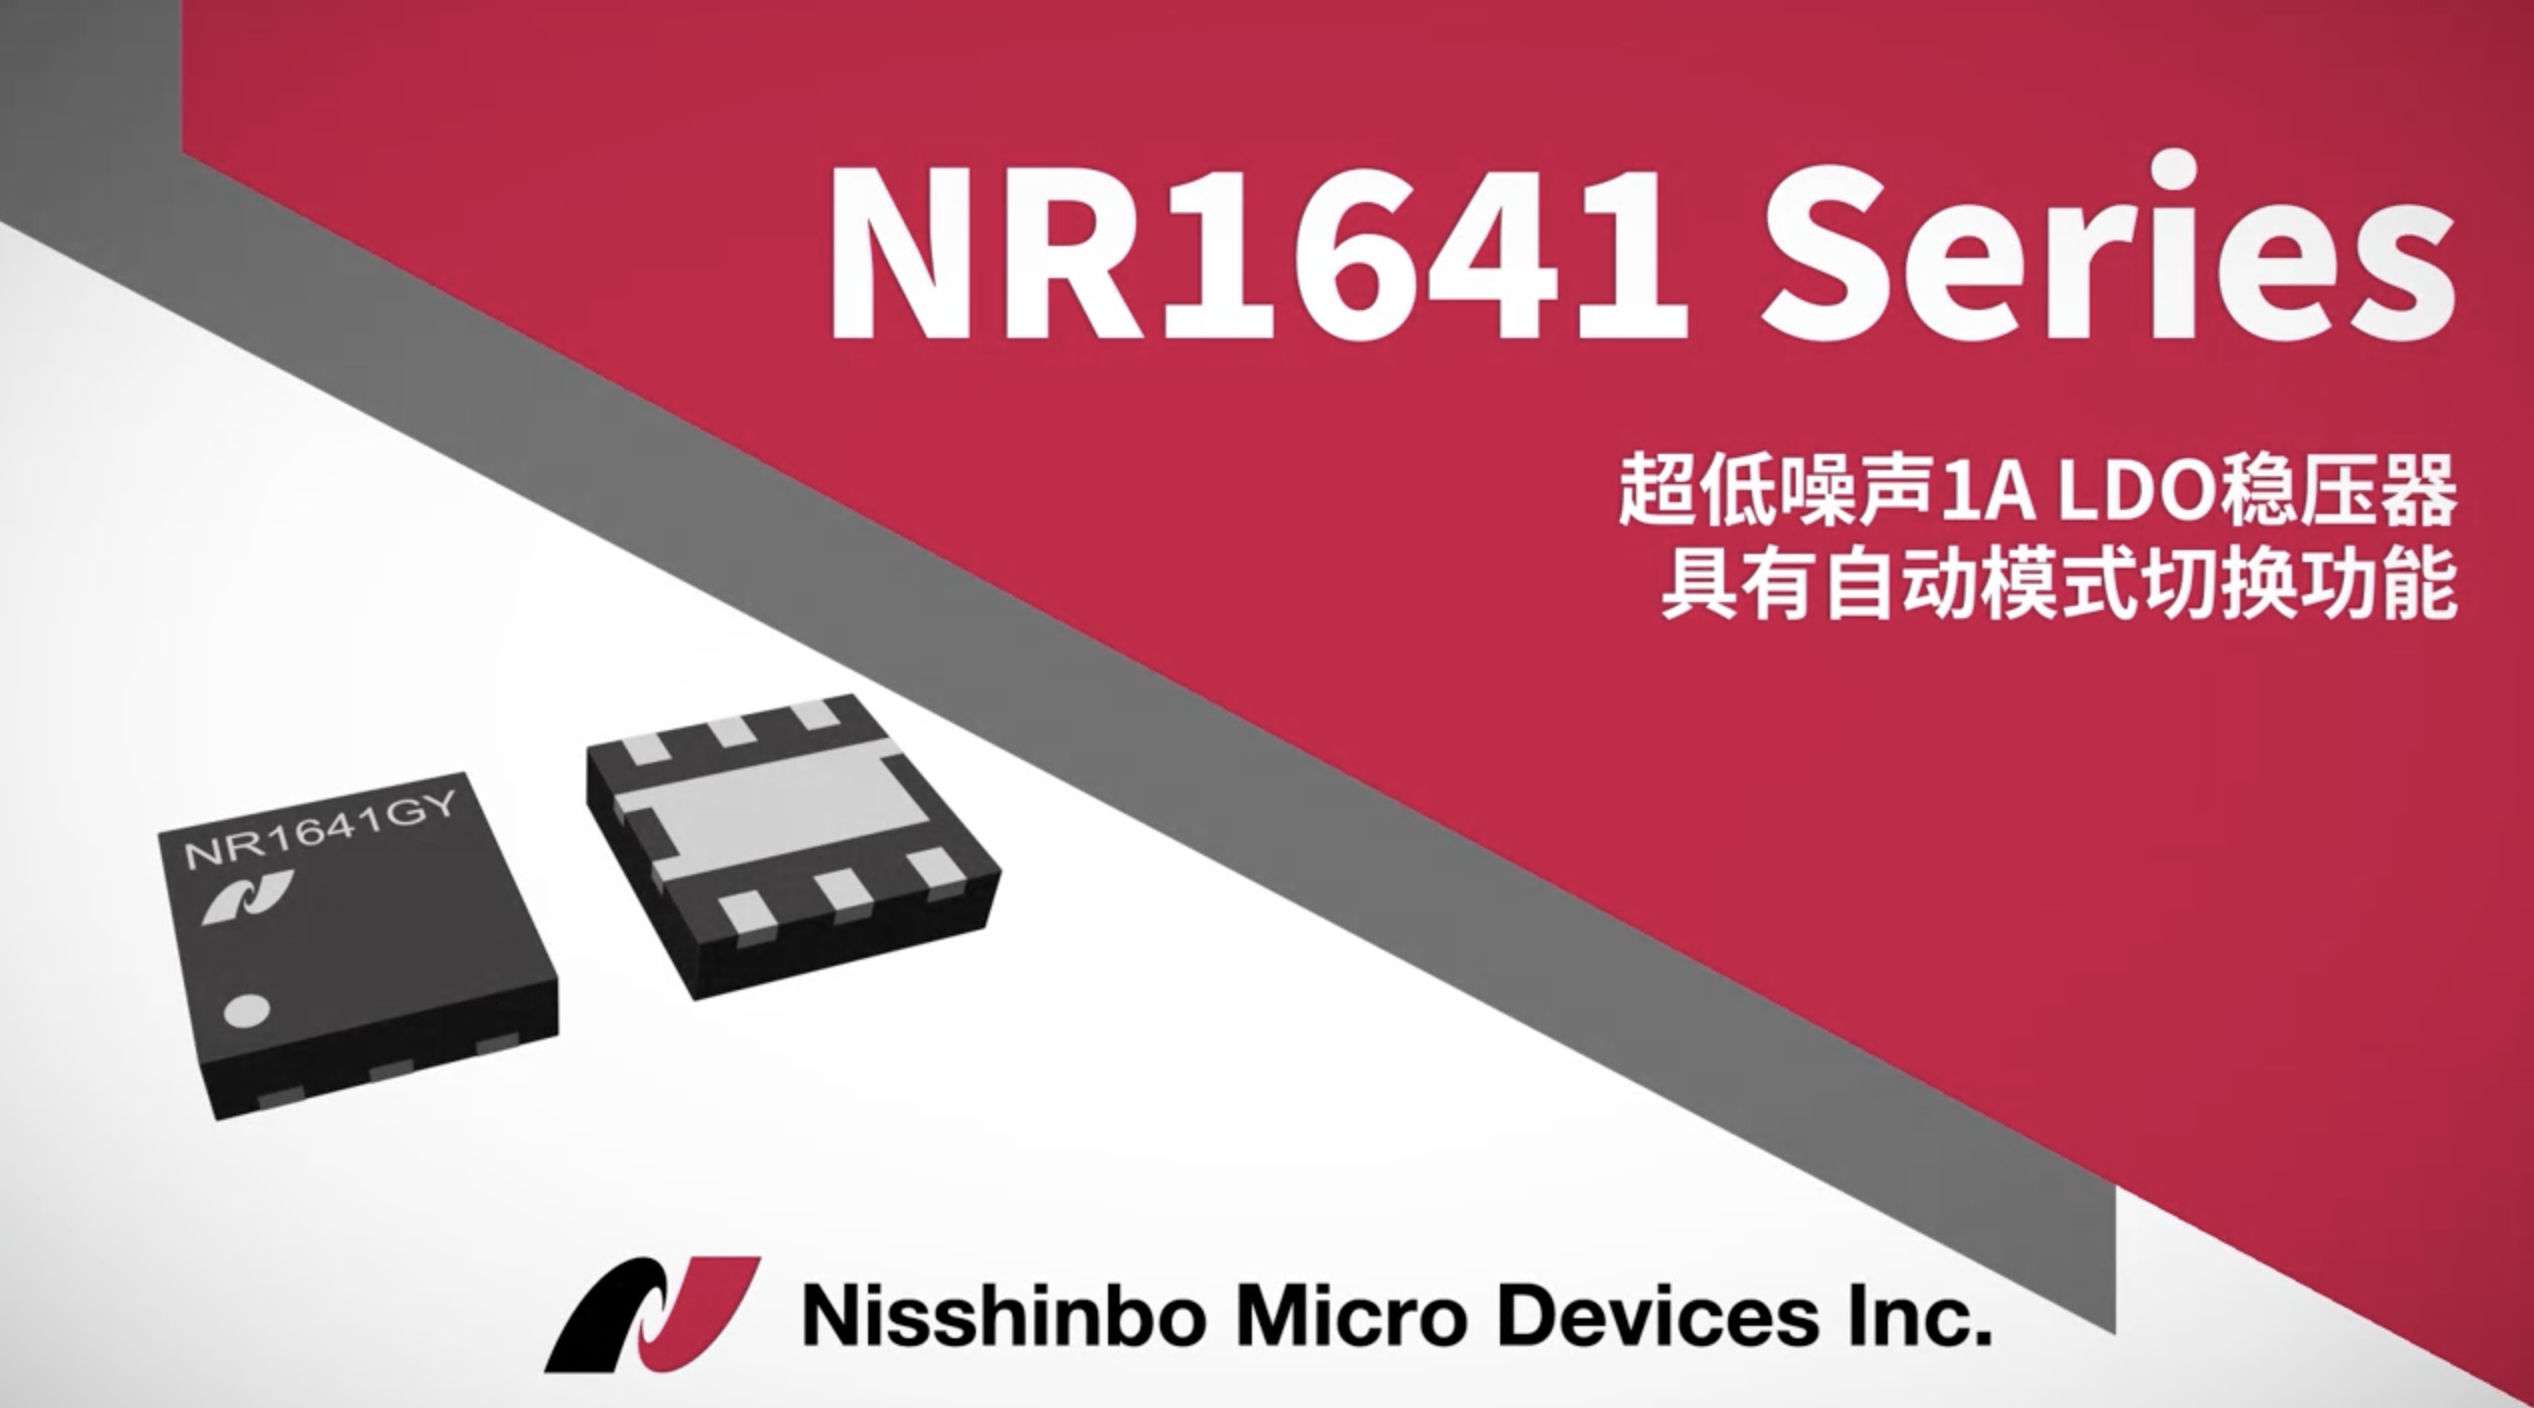 日清纺微电子 NR1641 Series-支持1A电流，具有低功耗模式和超低噪声的低压差稳压器